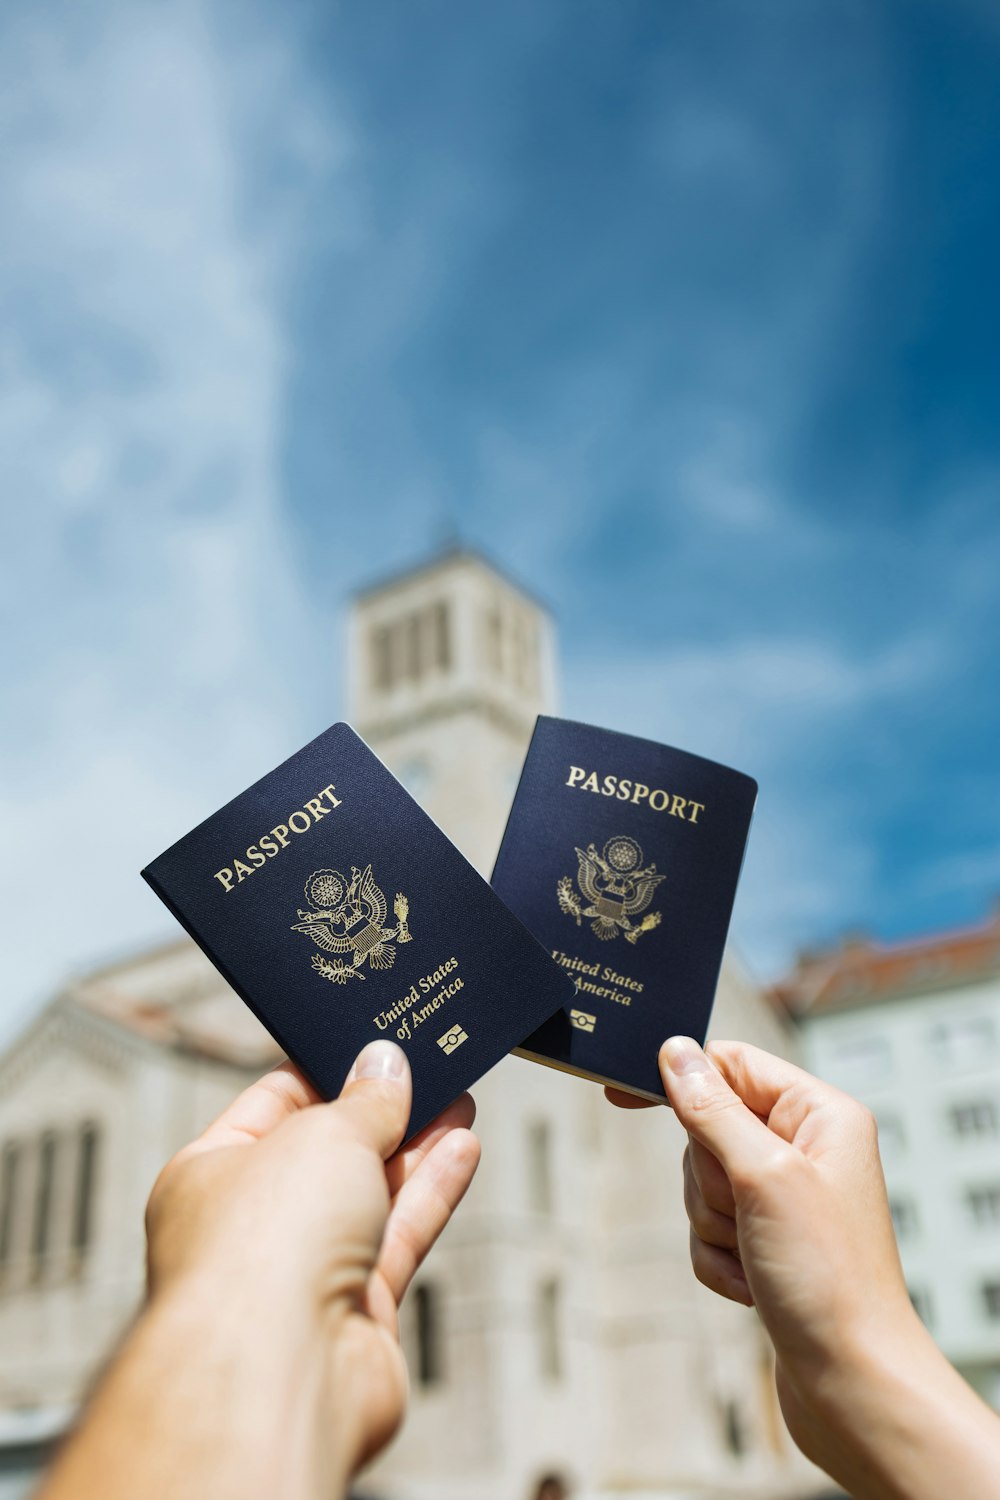 deux personnes brandissant deux passeports devant un immeuble